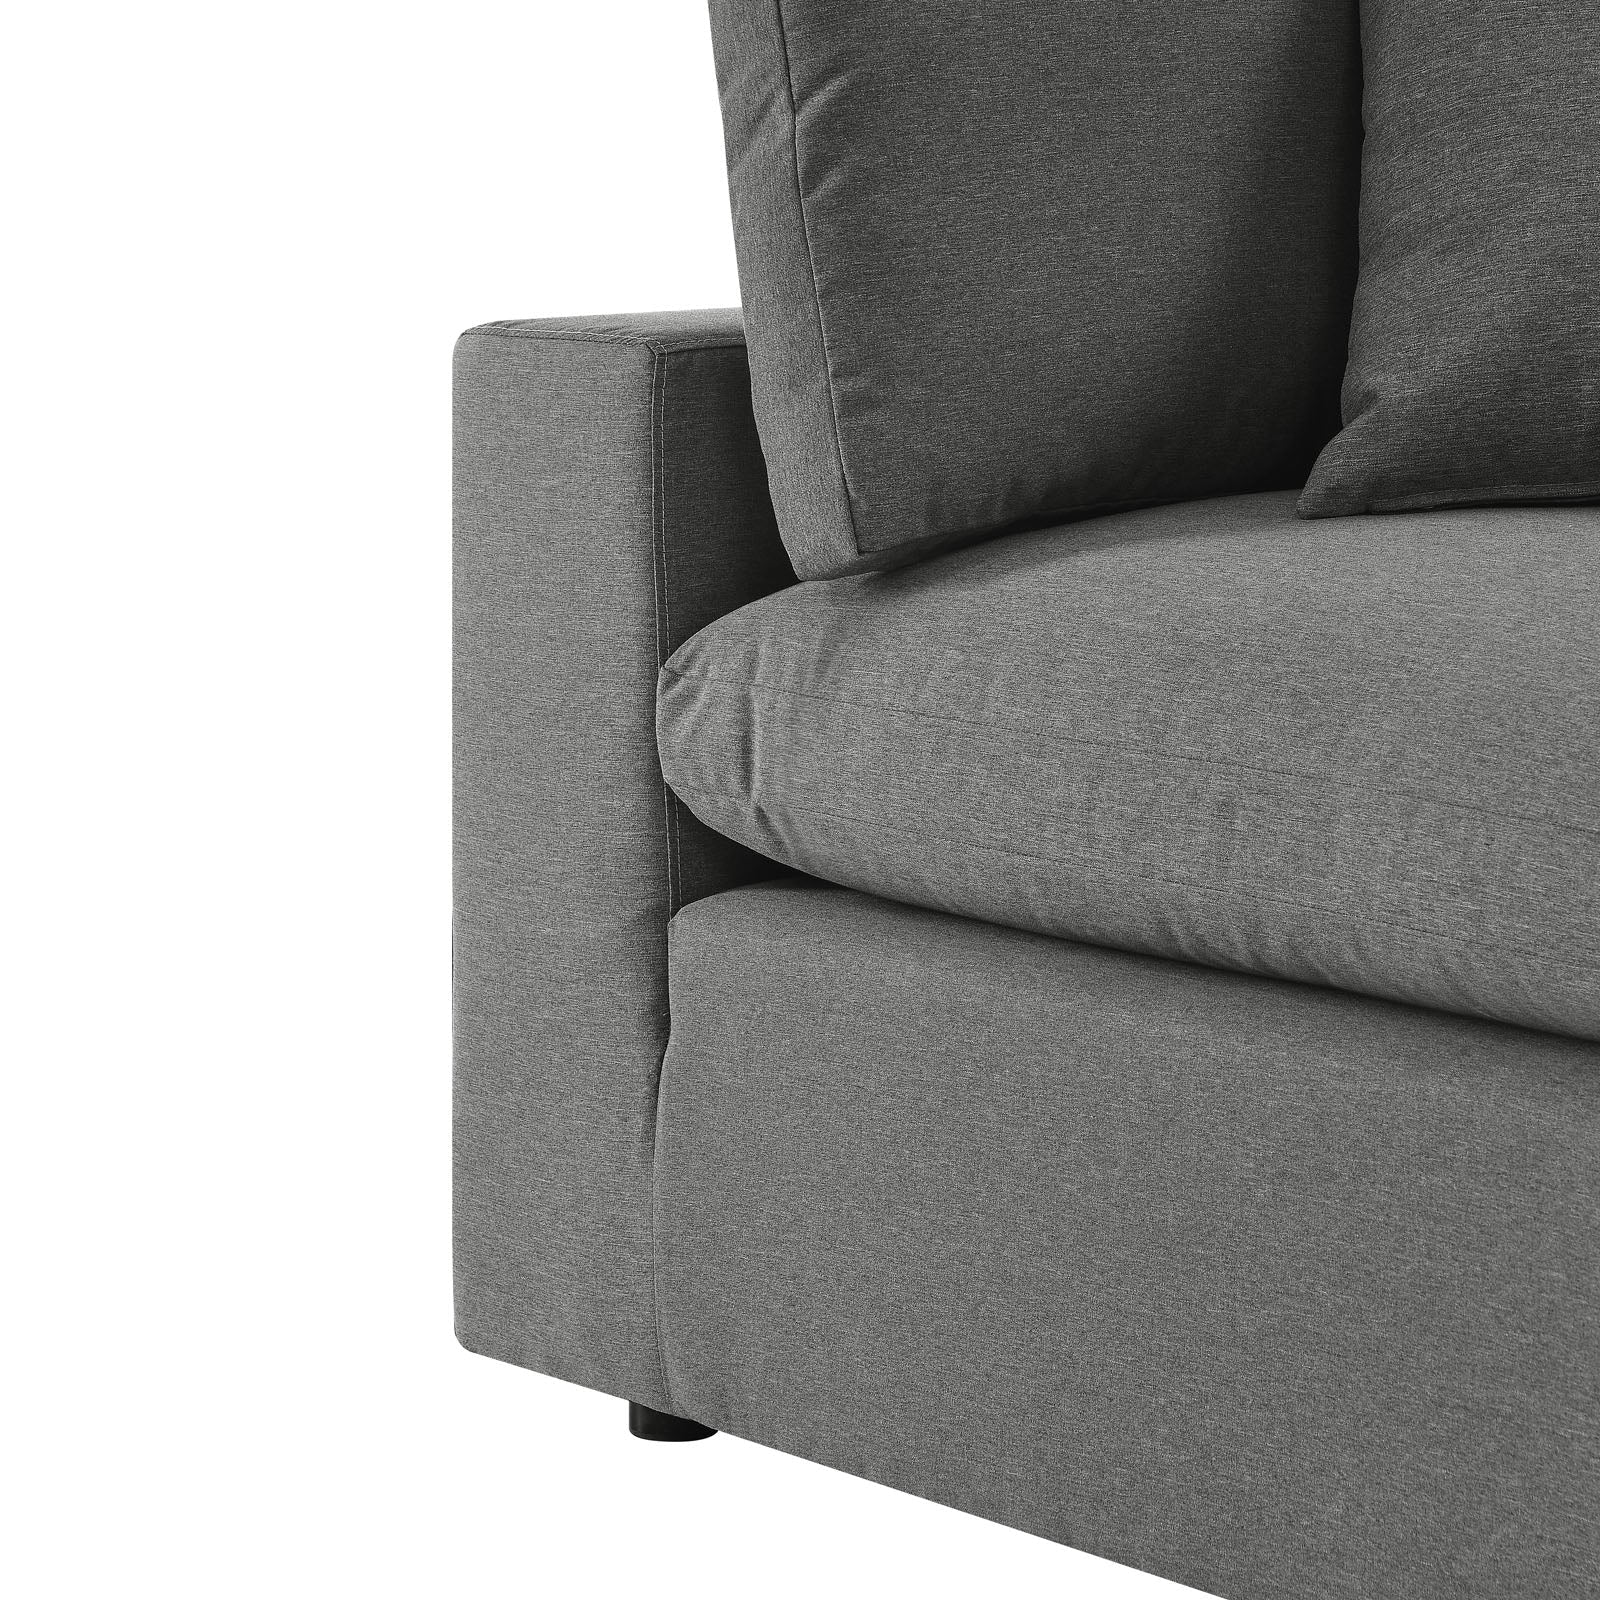 Commix 5-Piece Outdoor Patio Sectional Sofa - Elite Maison